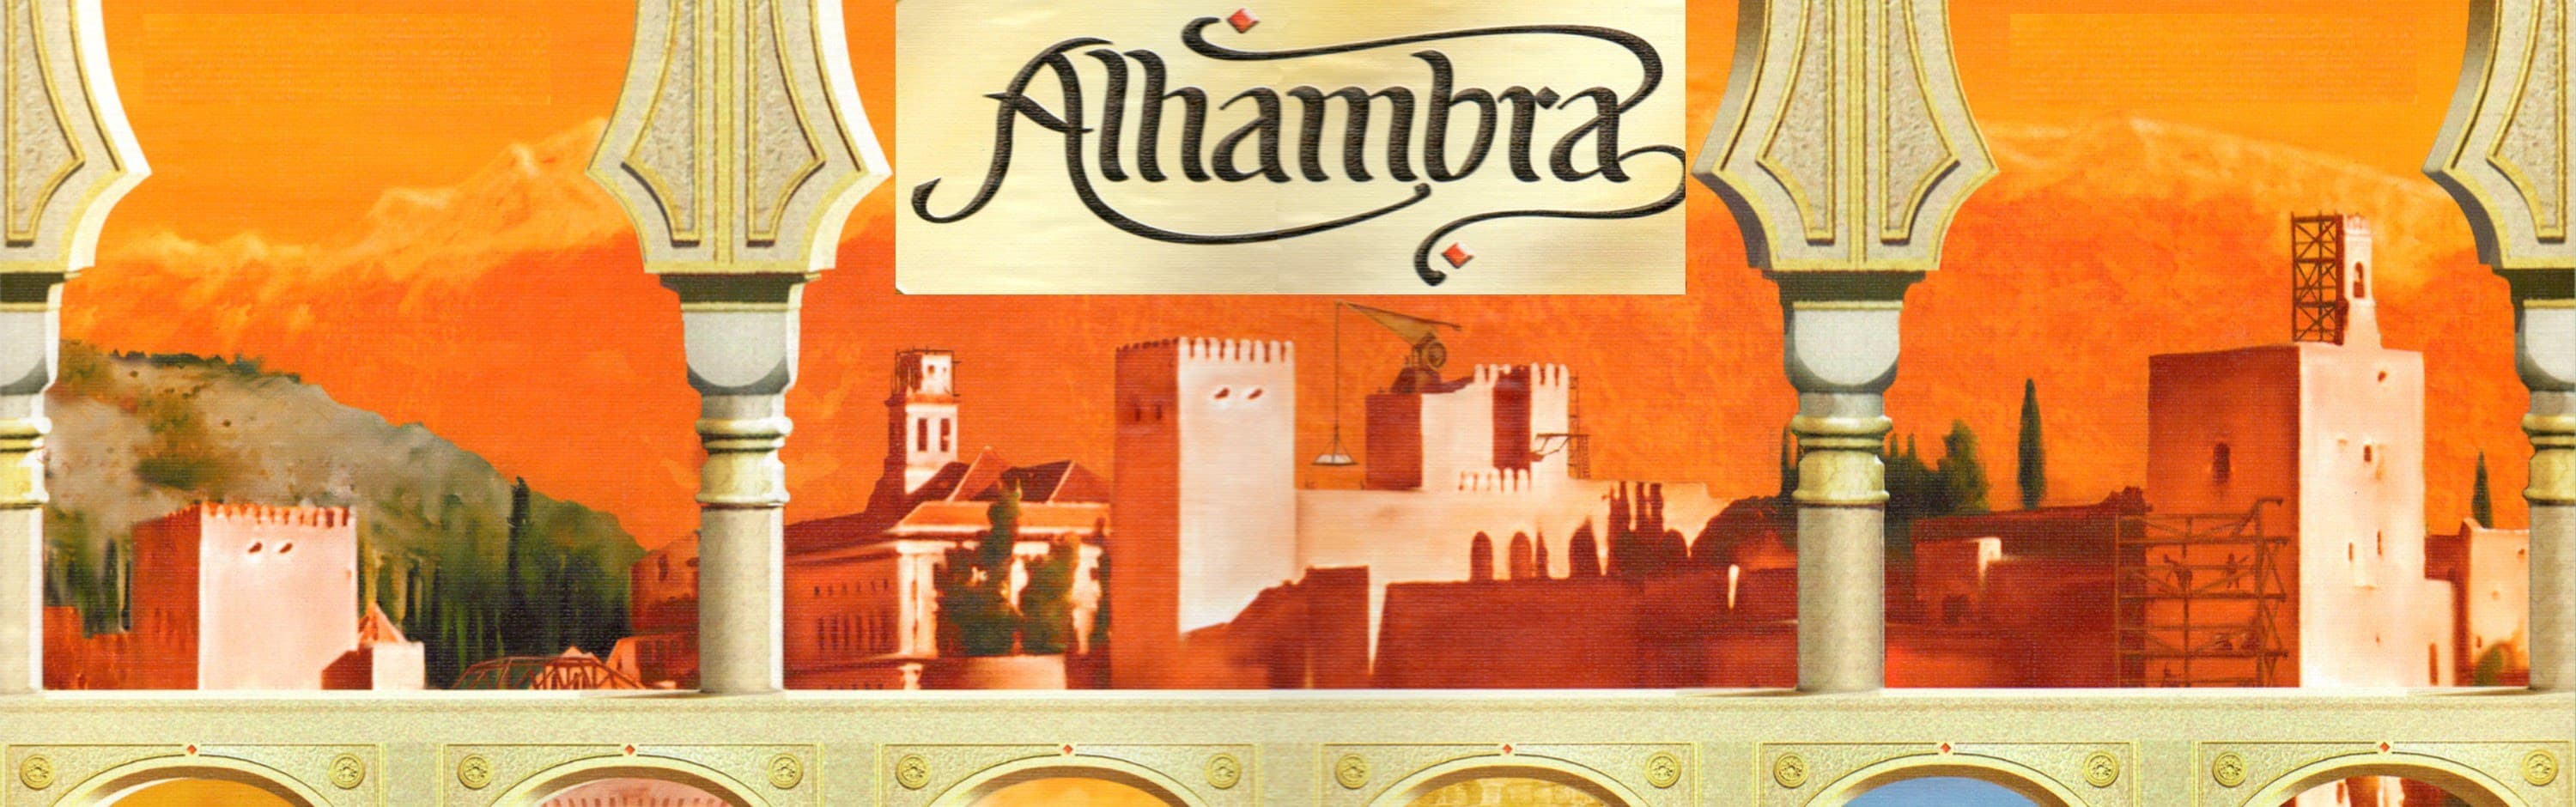 Au soleil c'est bien, mais Alhambra c'est encore mieux!!!